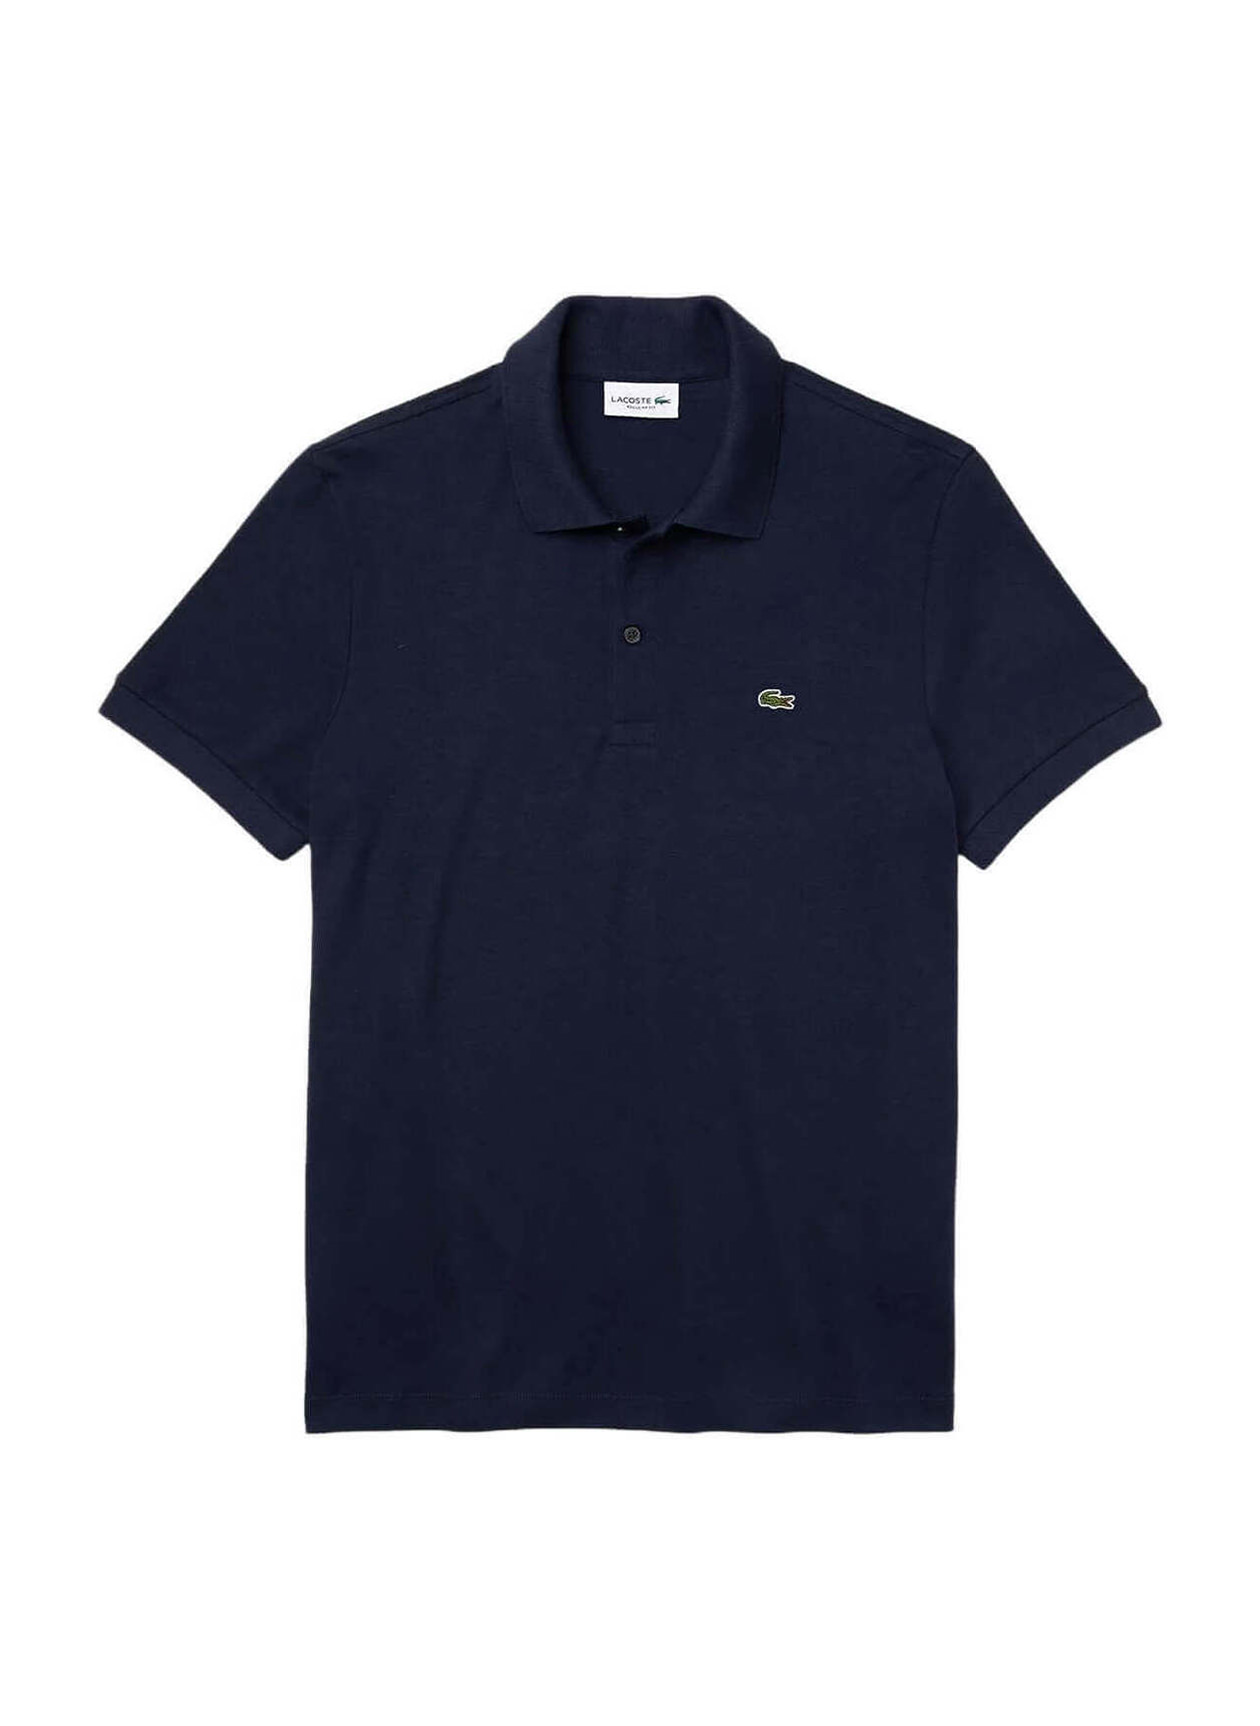 Lacoste Men's Navy Blue Regular Fit Soft Cotton Polo